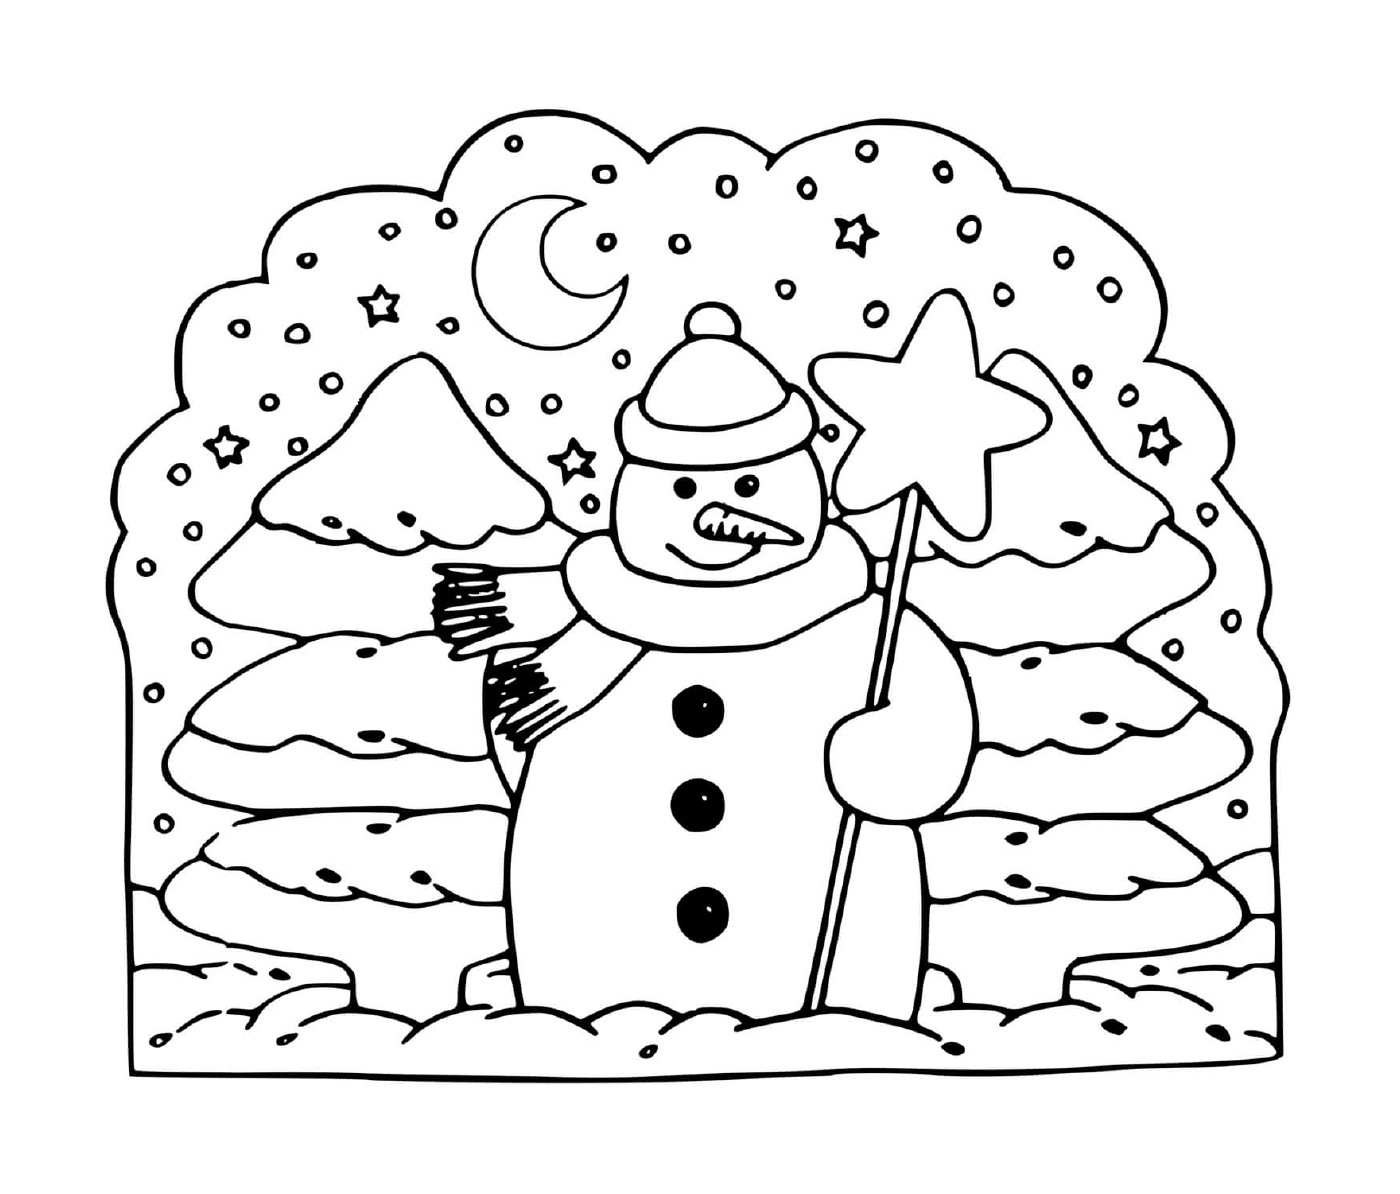  Hombre de nieve al lado del árbol 